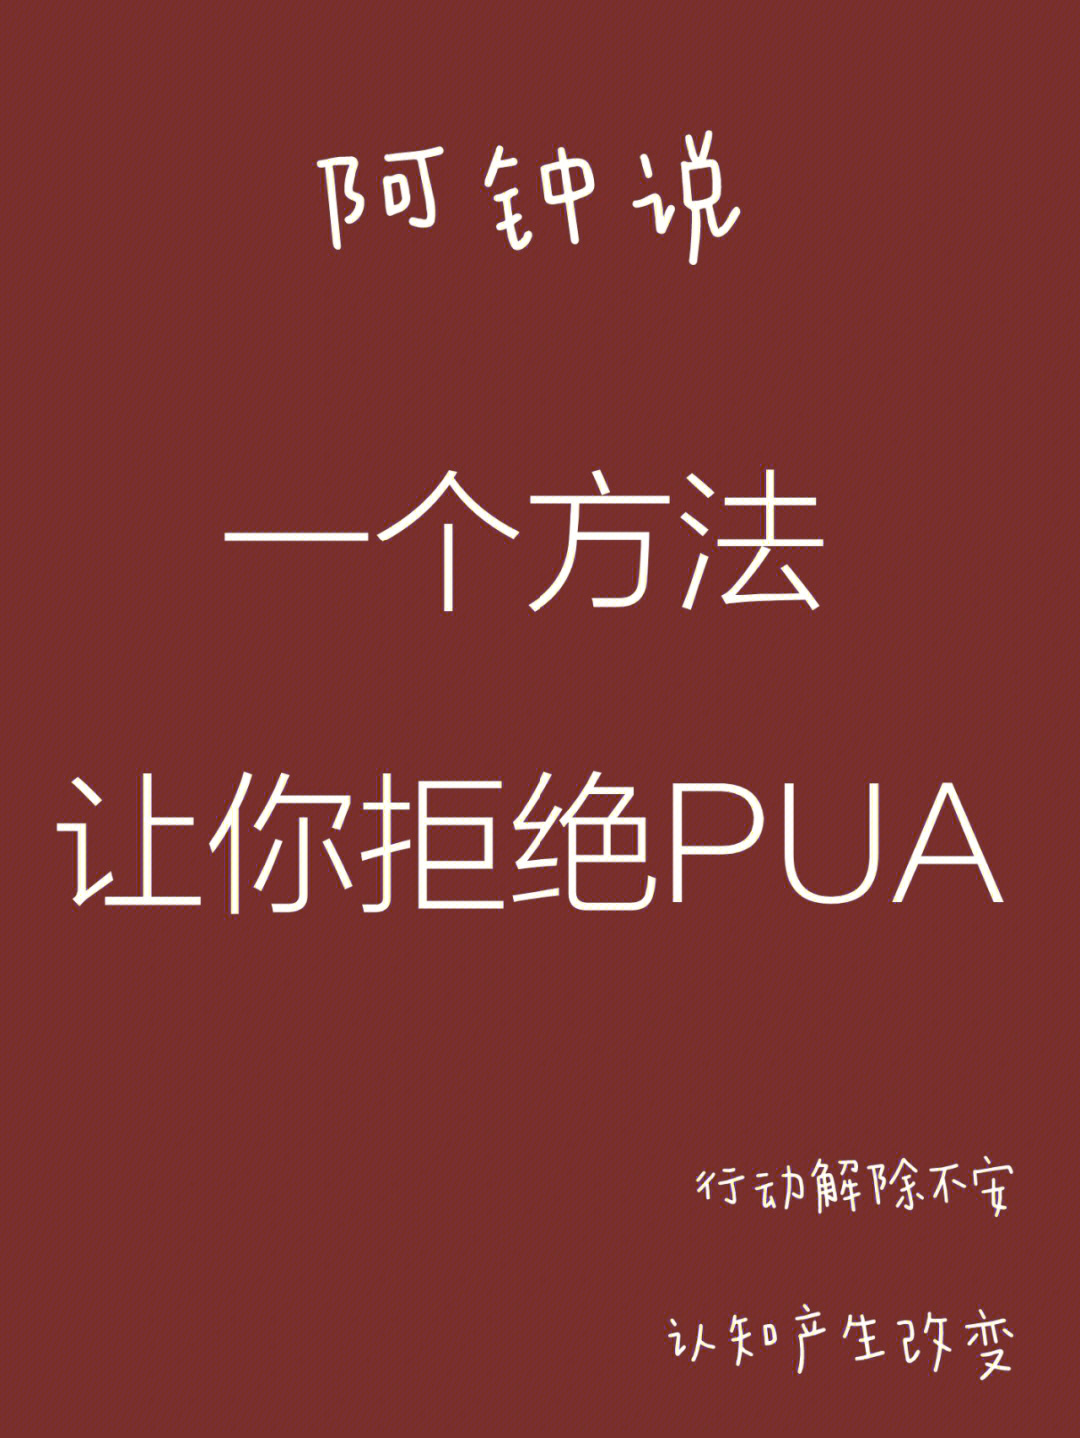 pua语言打压方式图片